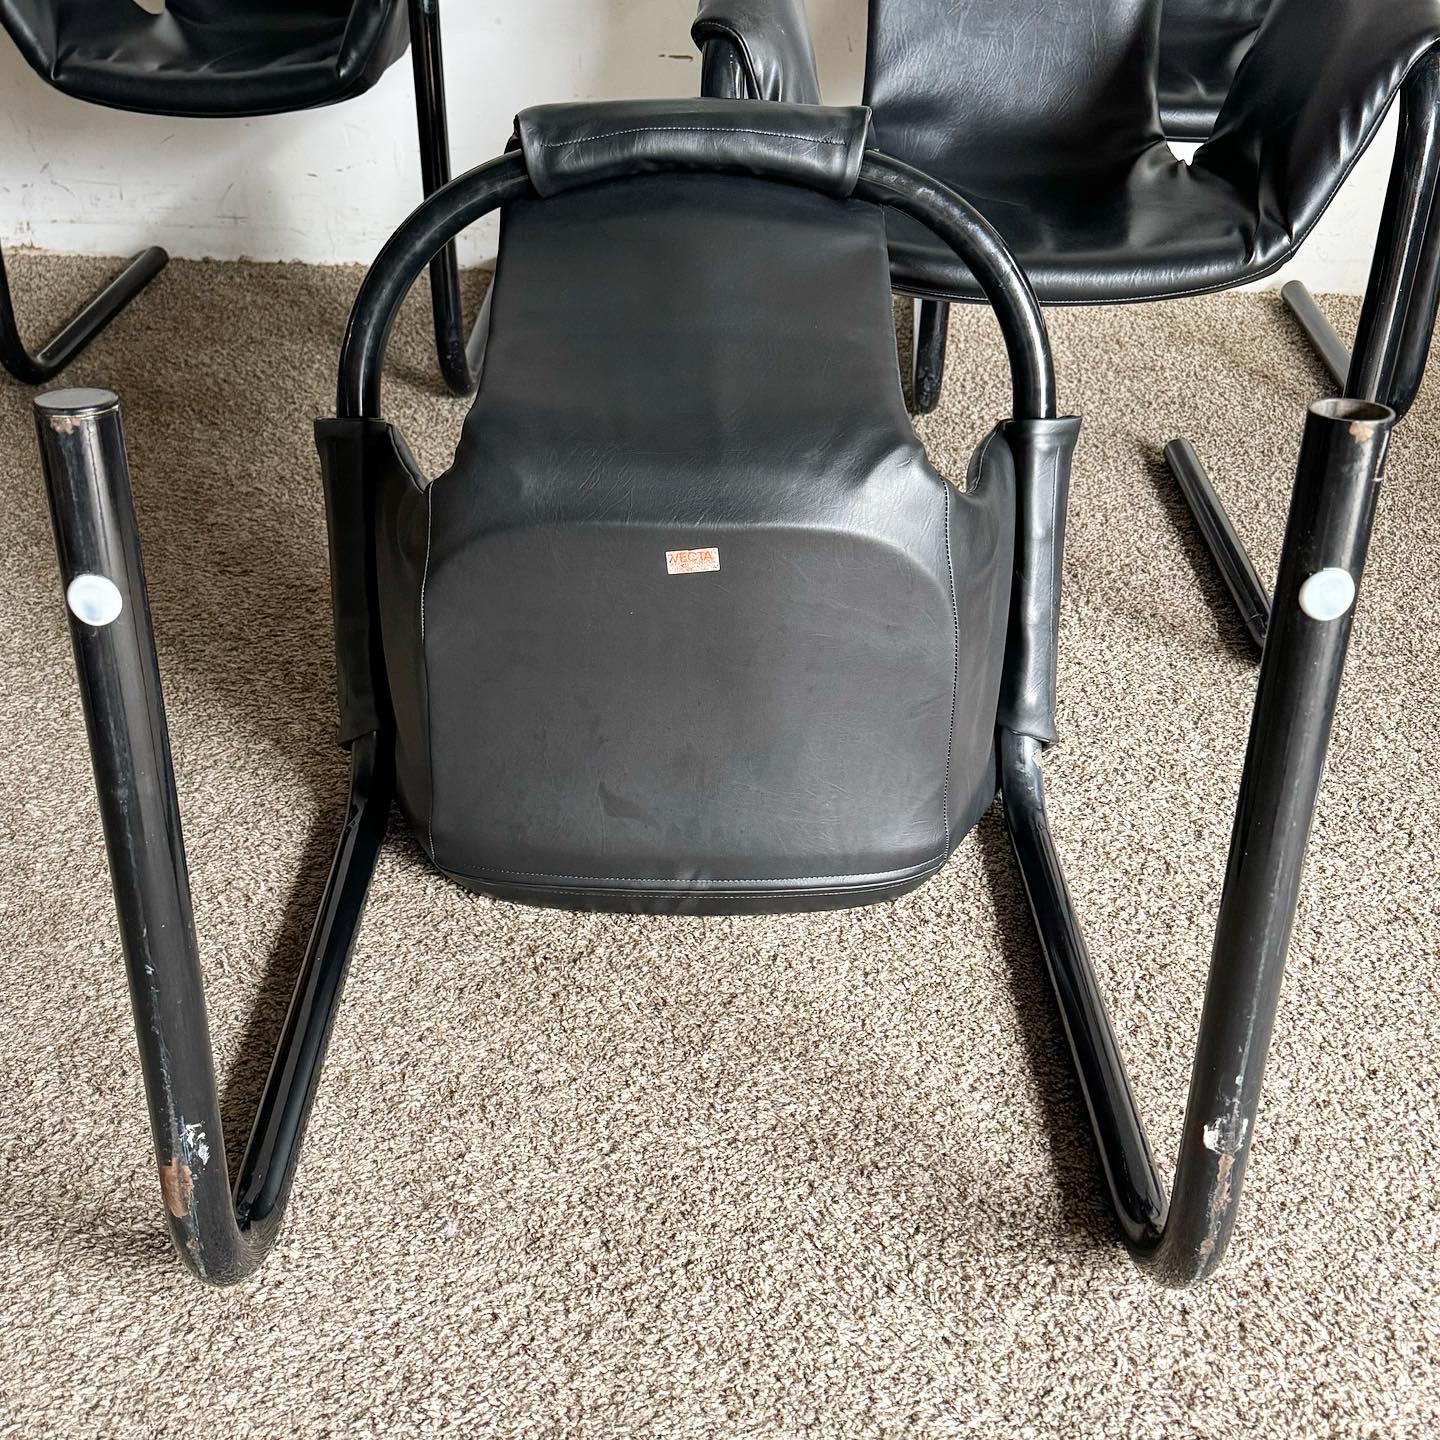 Die Zermatt Tubular Sling Chairs von Vecta aus schwarzem Vinyl und schwarzem Metall lassen das Retro-Flair der 1970er Jahre aufleben. Diese kultigen Stühle zeichnen sich durch ein minimalistisches Design mit einer schwarzen Vinylbespannung und einem